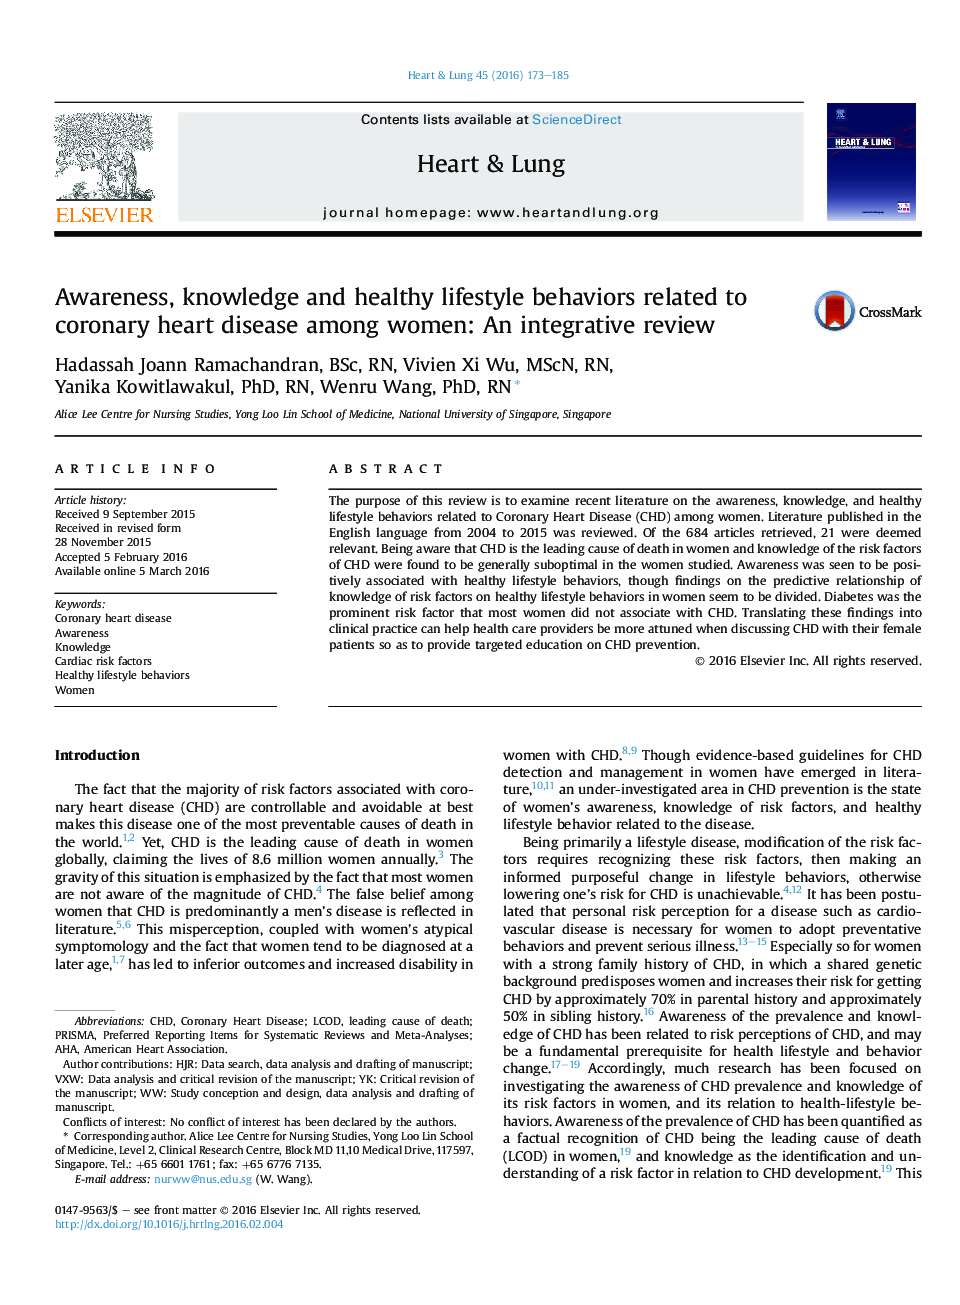 آگاهی، دانش و رفتارهای زندگی سالم مربوط به بیماری عروق کرونر قلب در زنان: یک بررسی یکپارچه